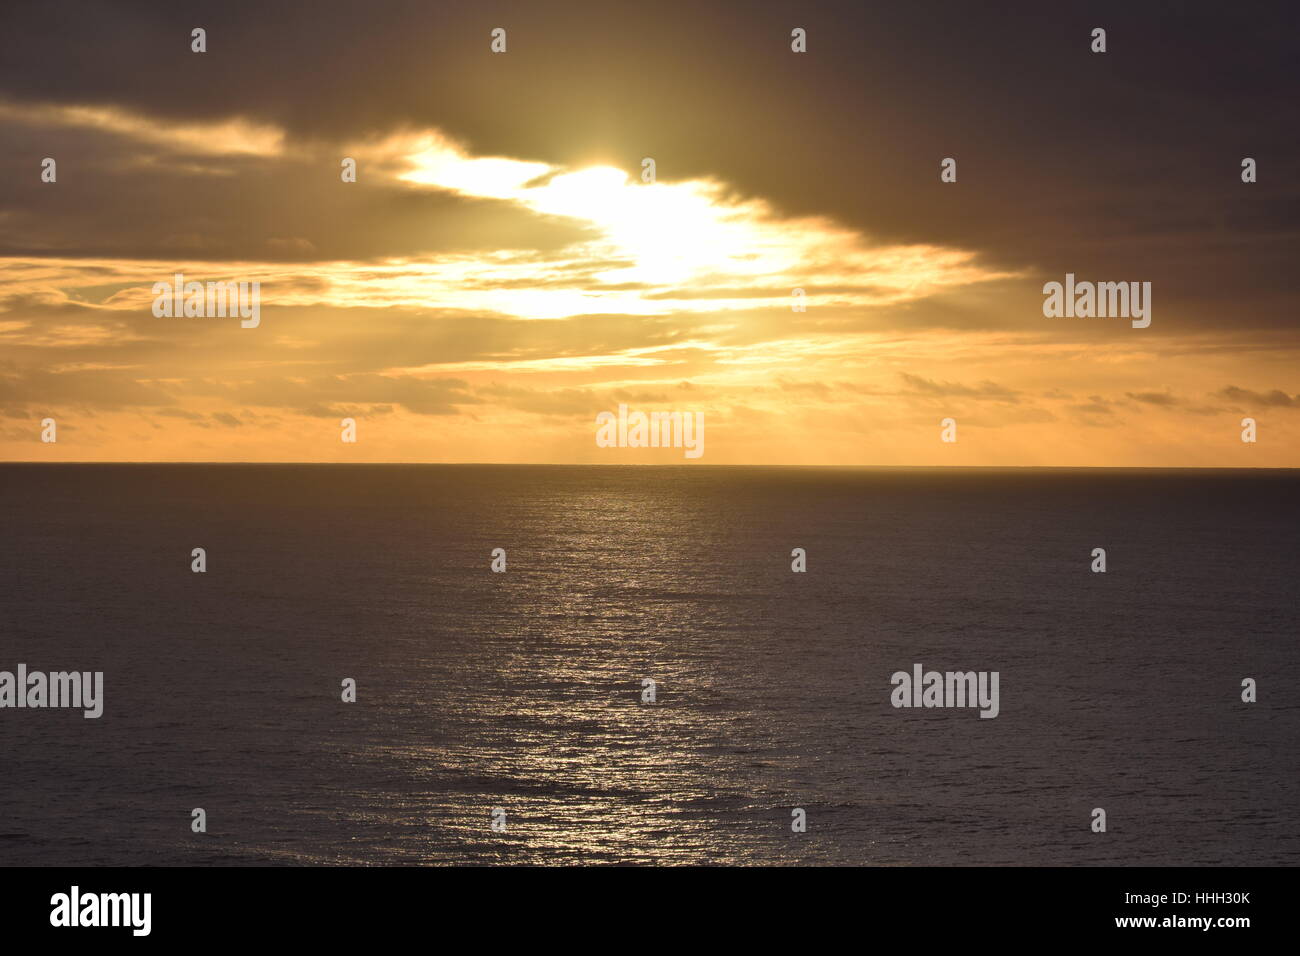 Coucher du soleil peeking through the clouds, chatoyante de lumière sur l'océan Pacifique Banque D'Images